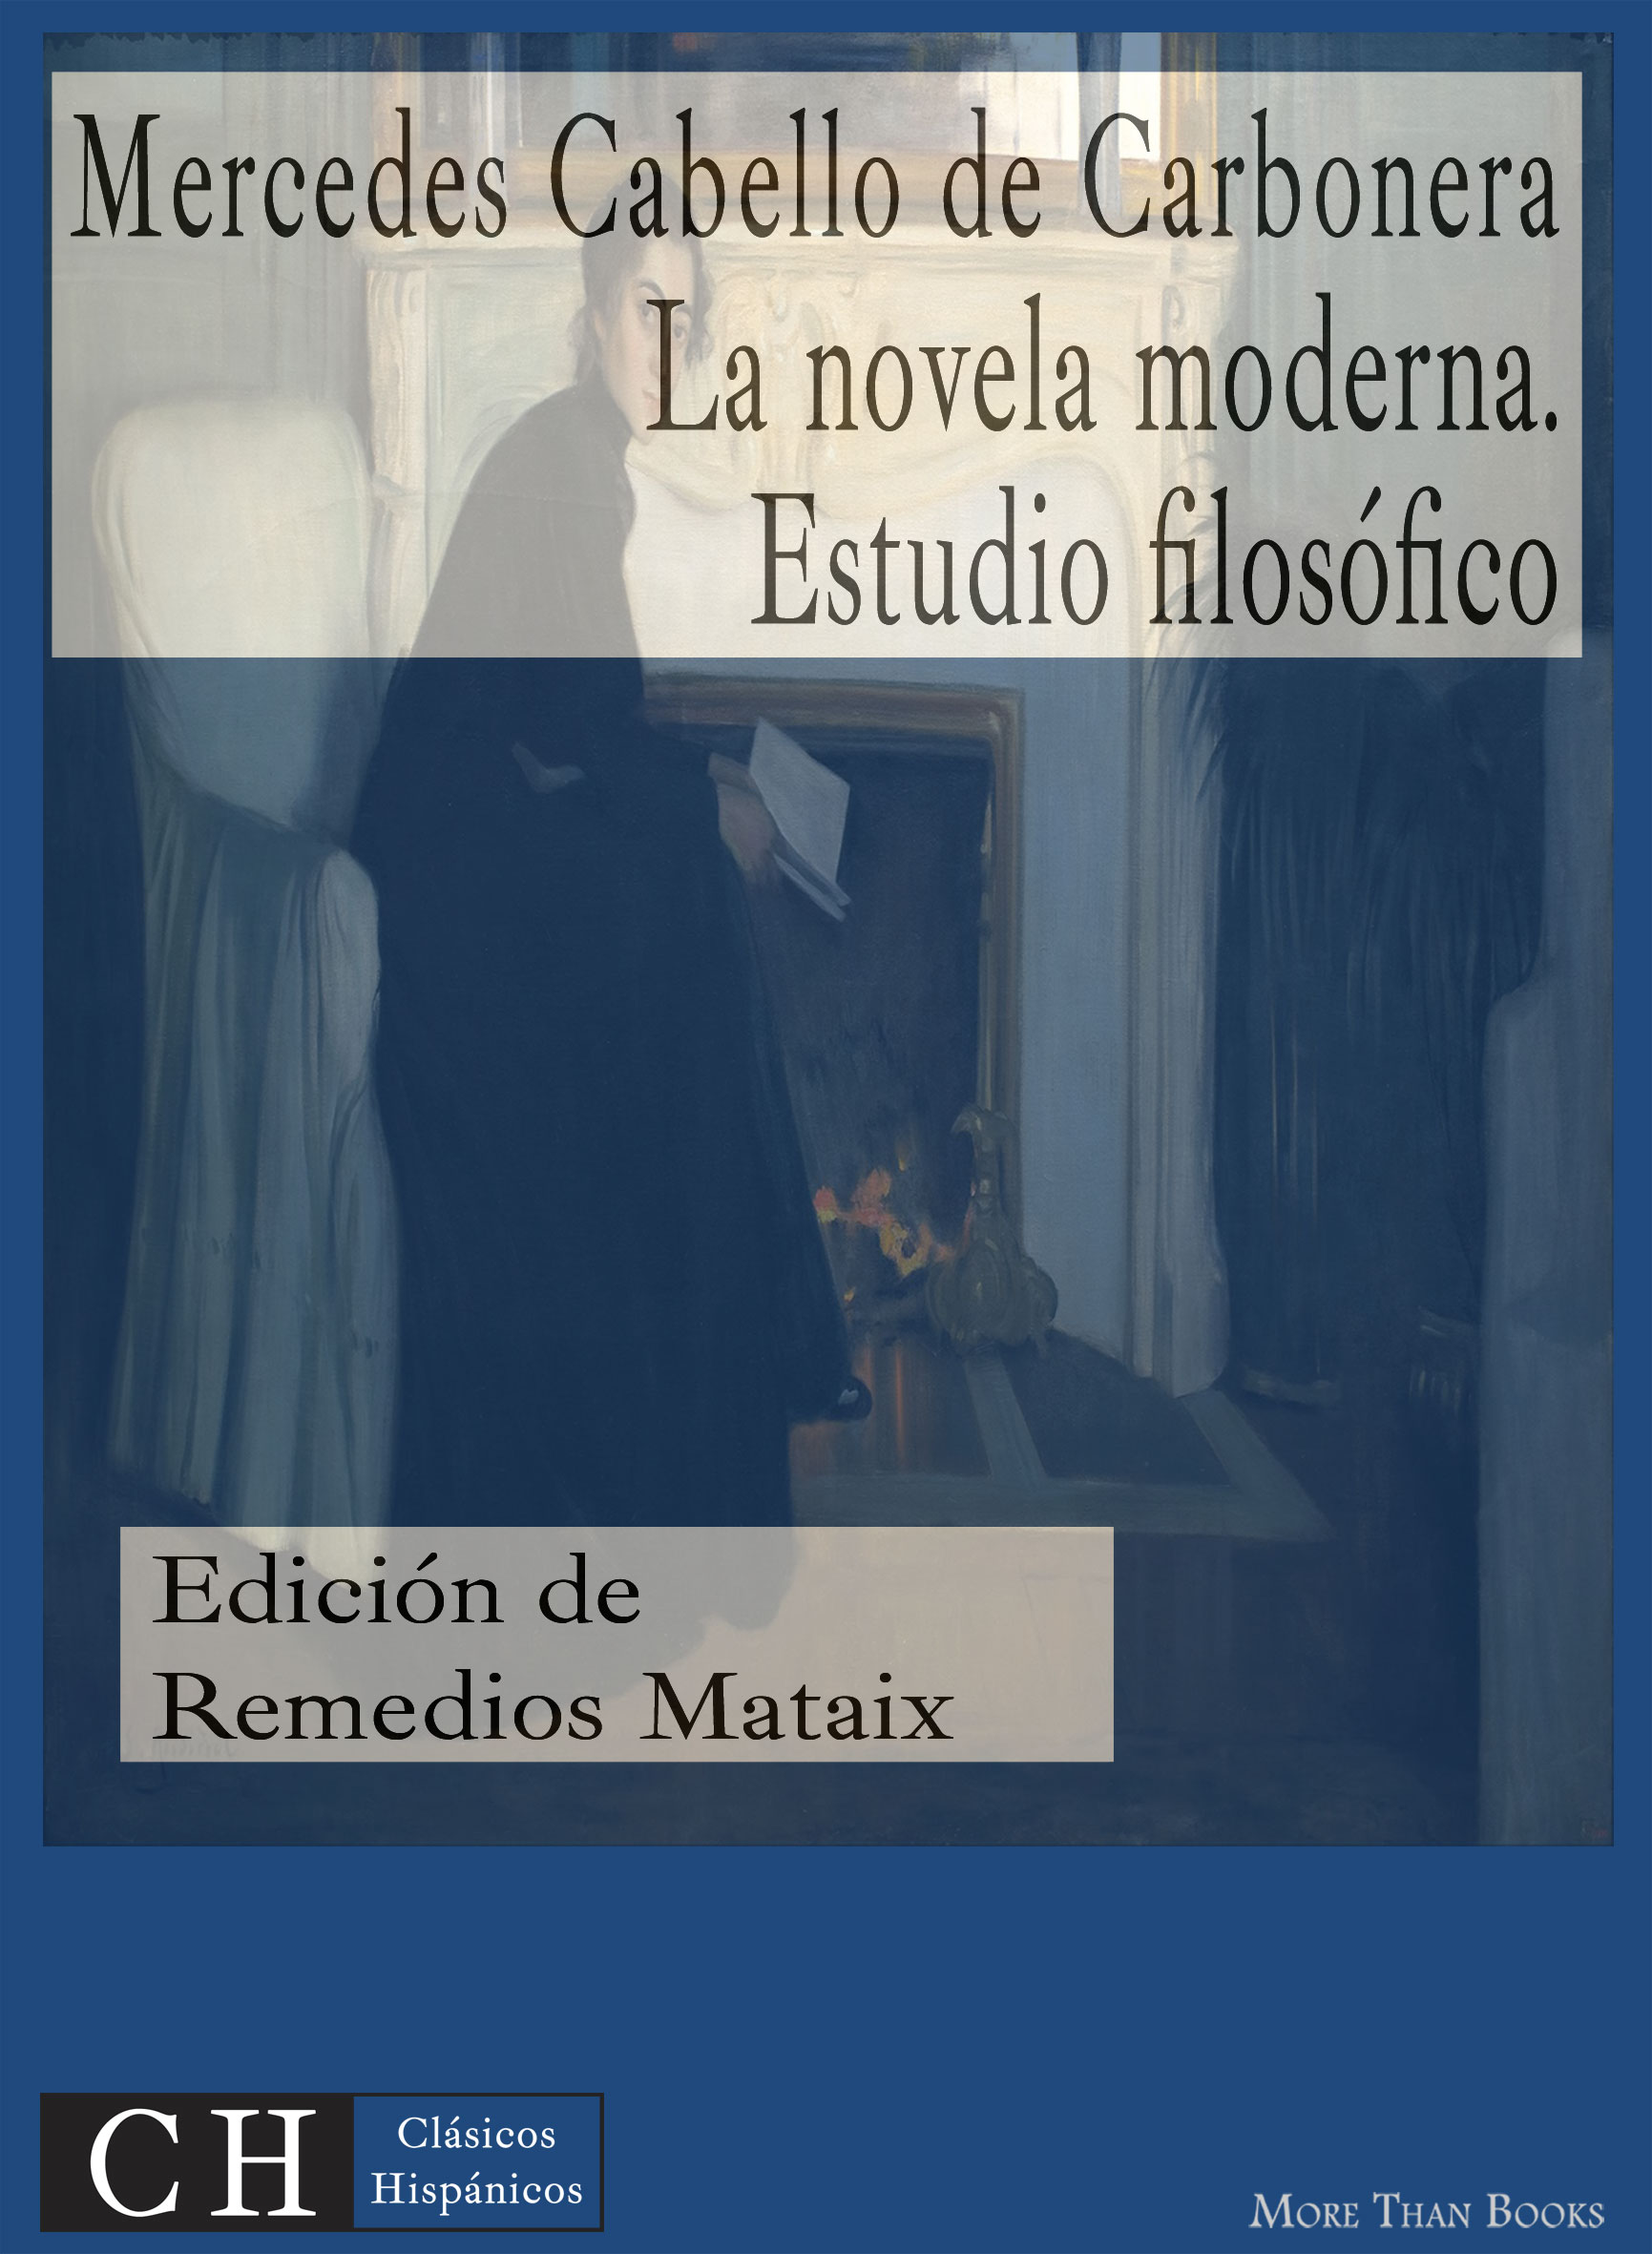 Imagen de portada del libro La novela moderna: estudio filosófico